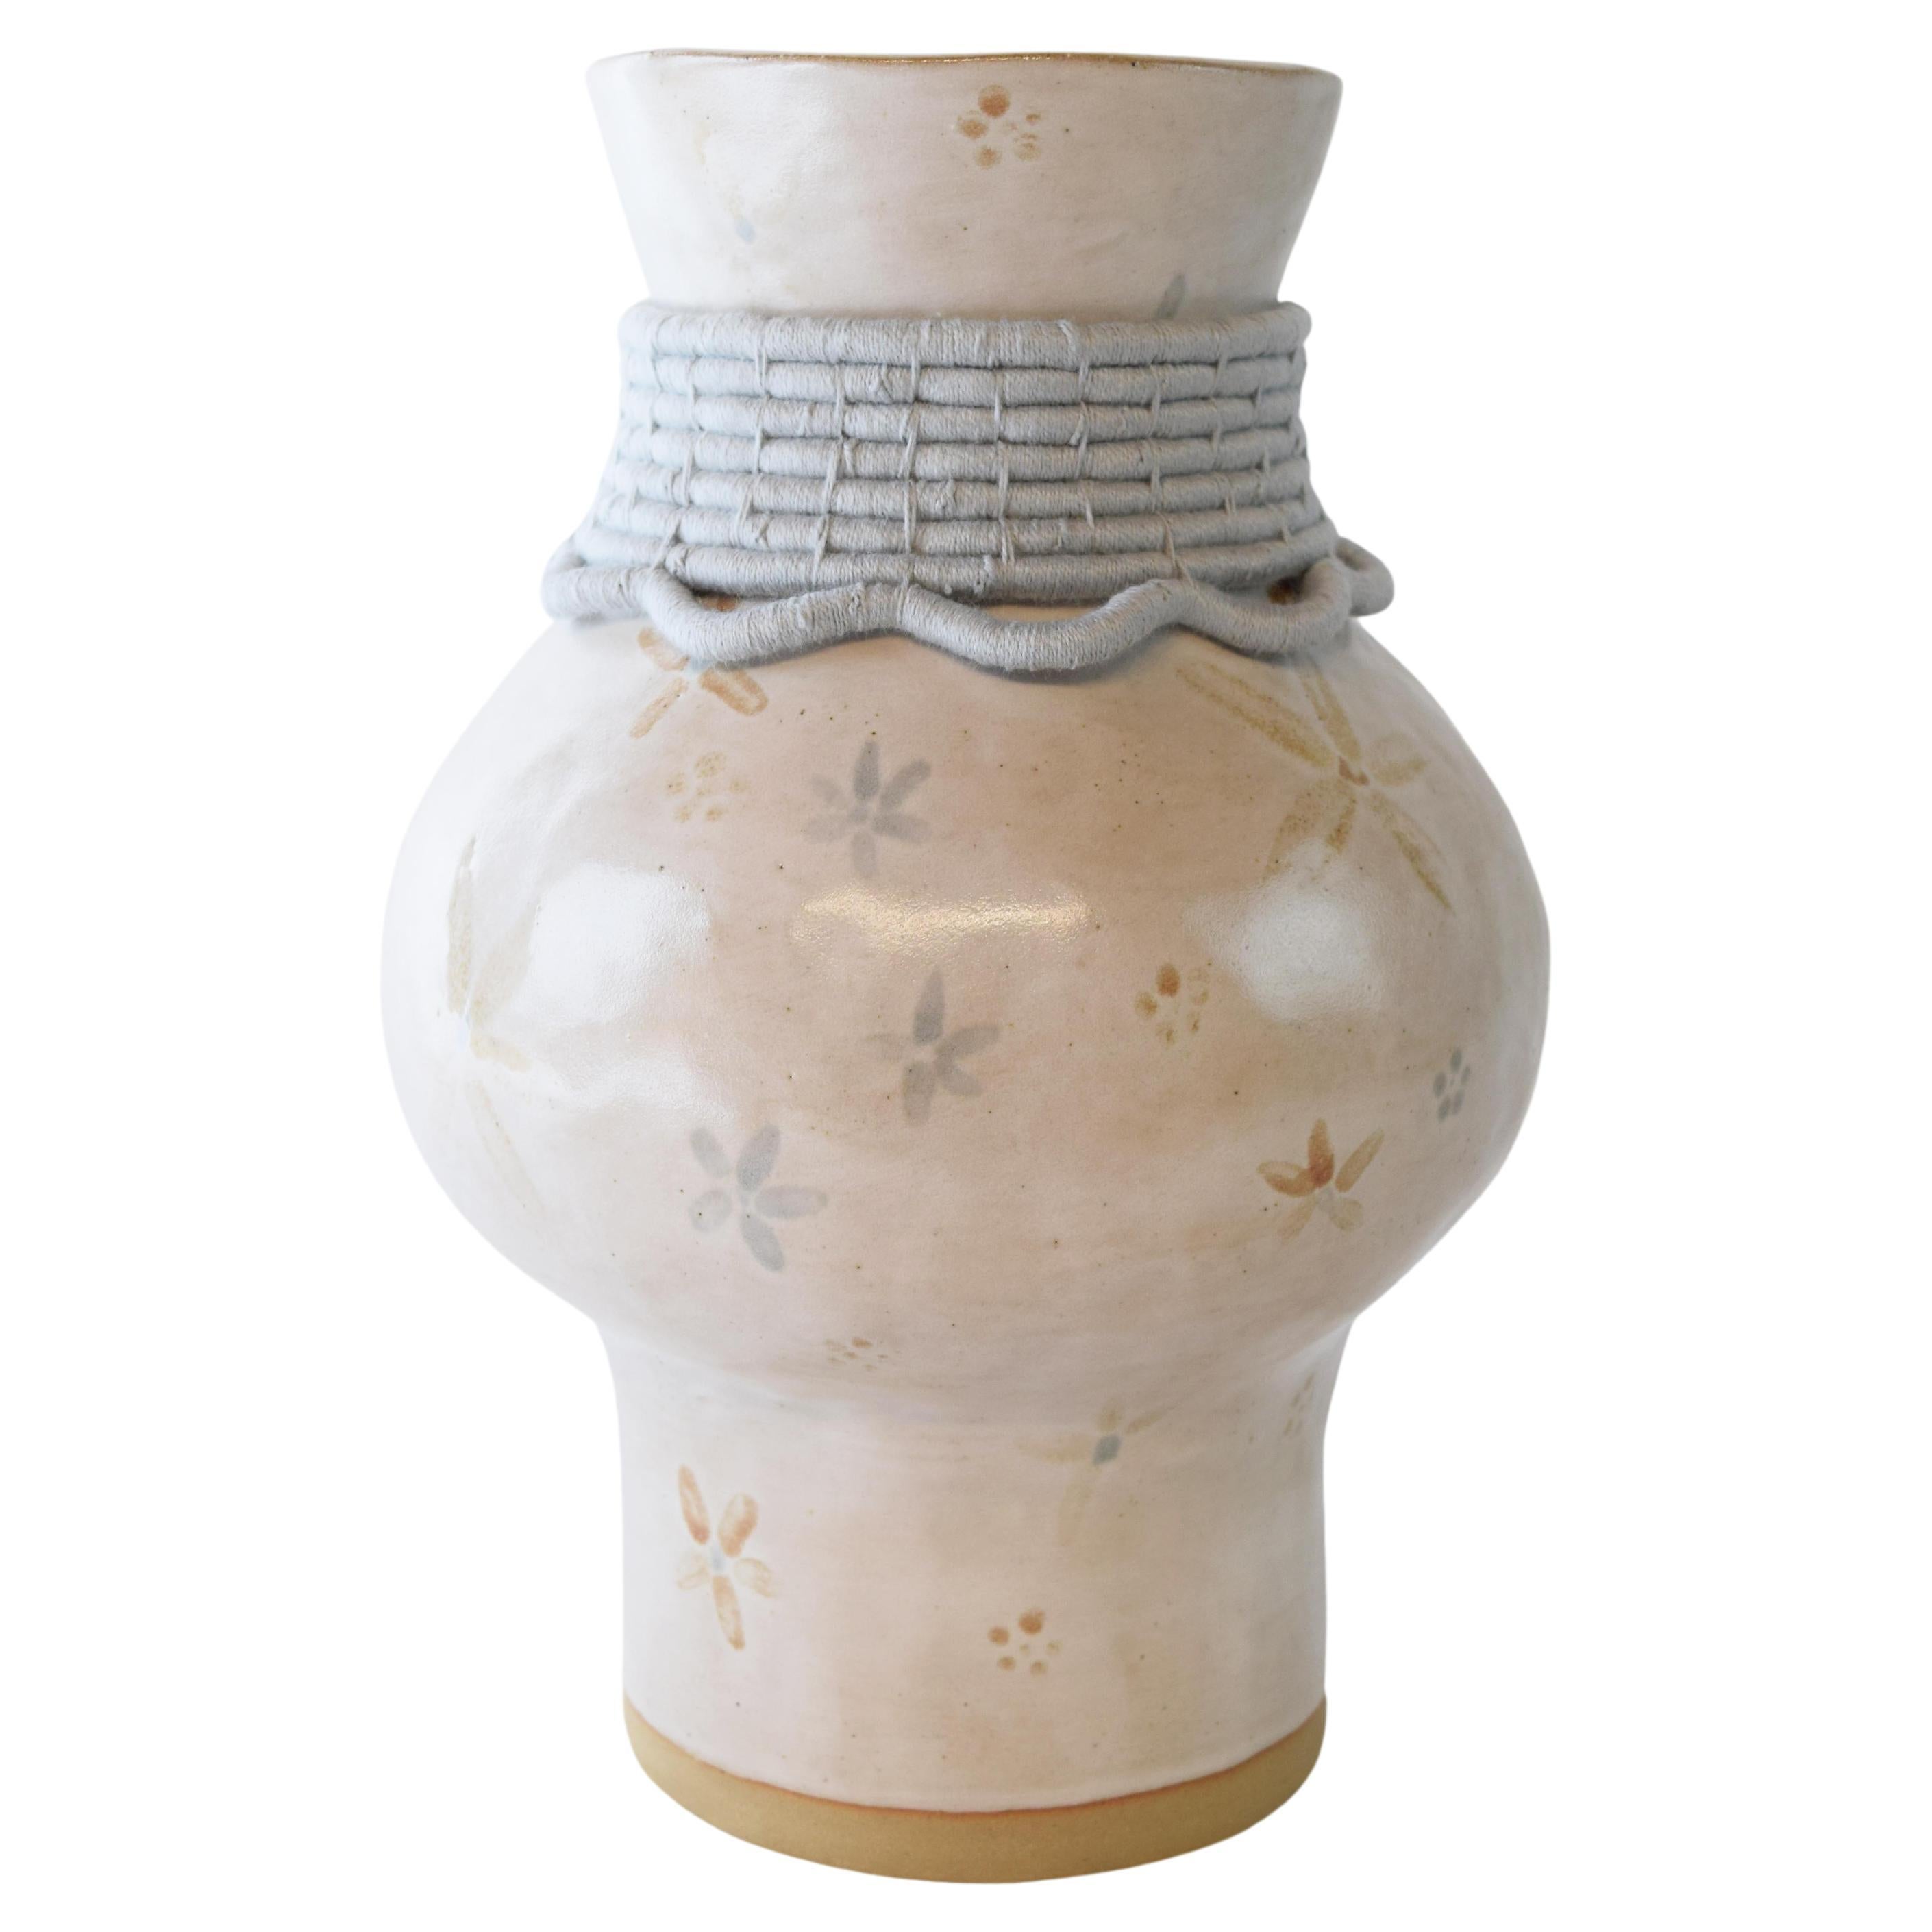 OOAK Vase en céramique fait à la main #791 - Détails floraux et bleus clairs en coton émaillé à la main